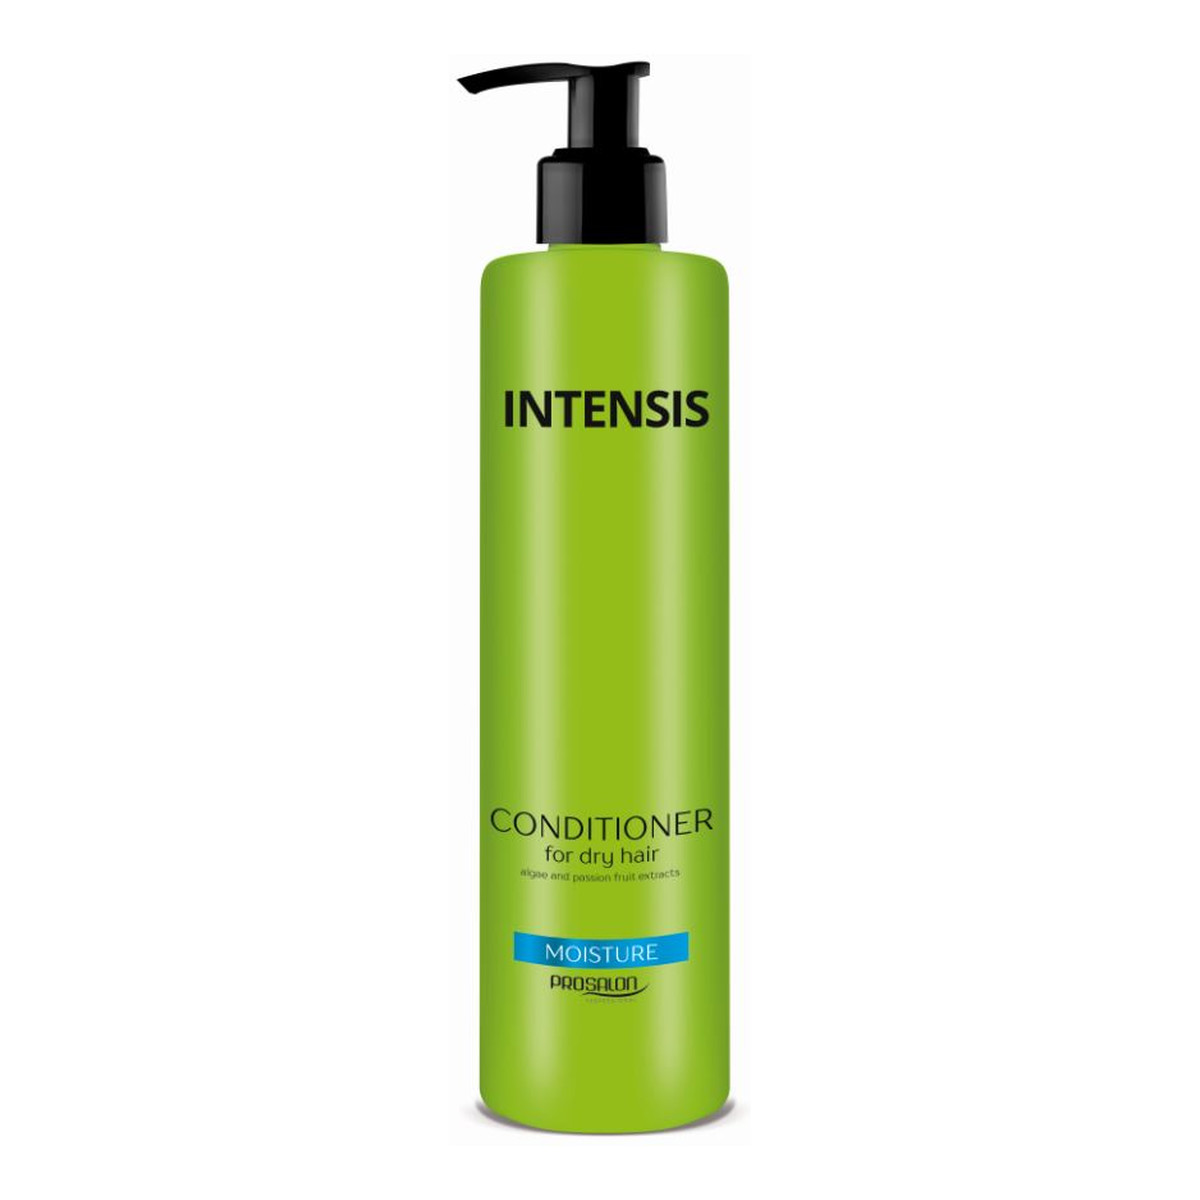 Chantal Profesional Prosalon Intensis Conditioner For Dry Hair odżywka nawilżająca do włosów suchych 1000g